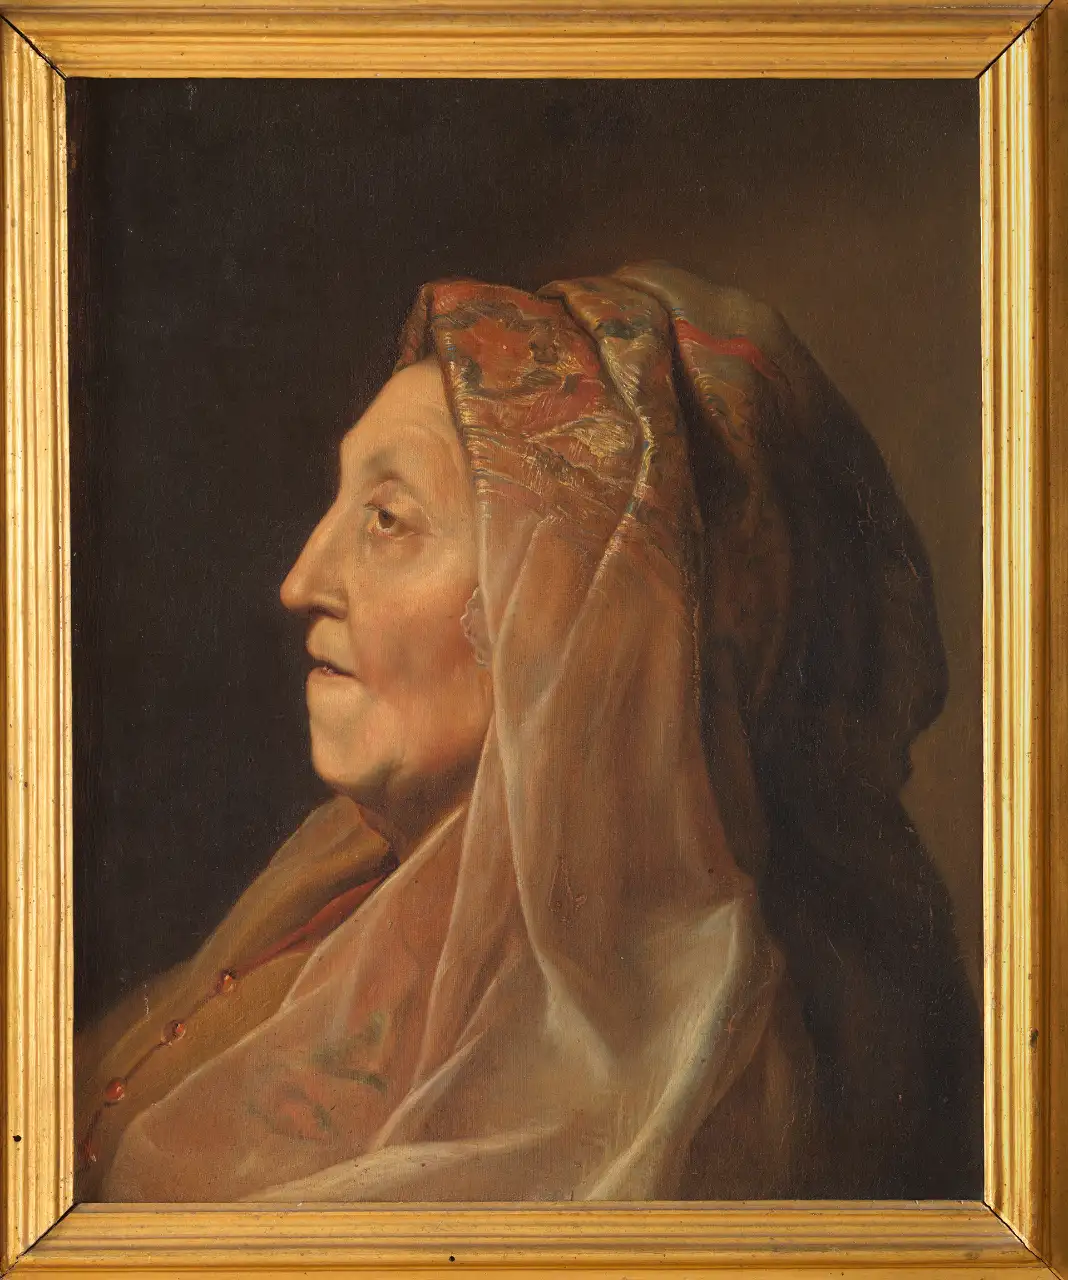 Ritratto della madre di Rembrandt - Musei Macerata